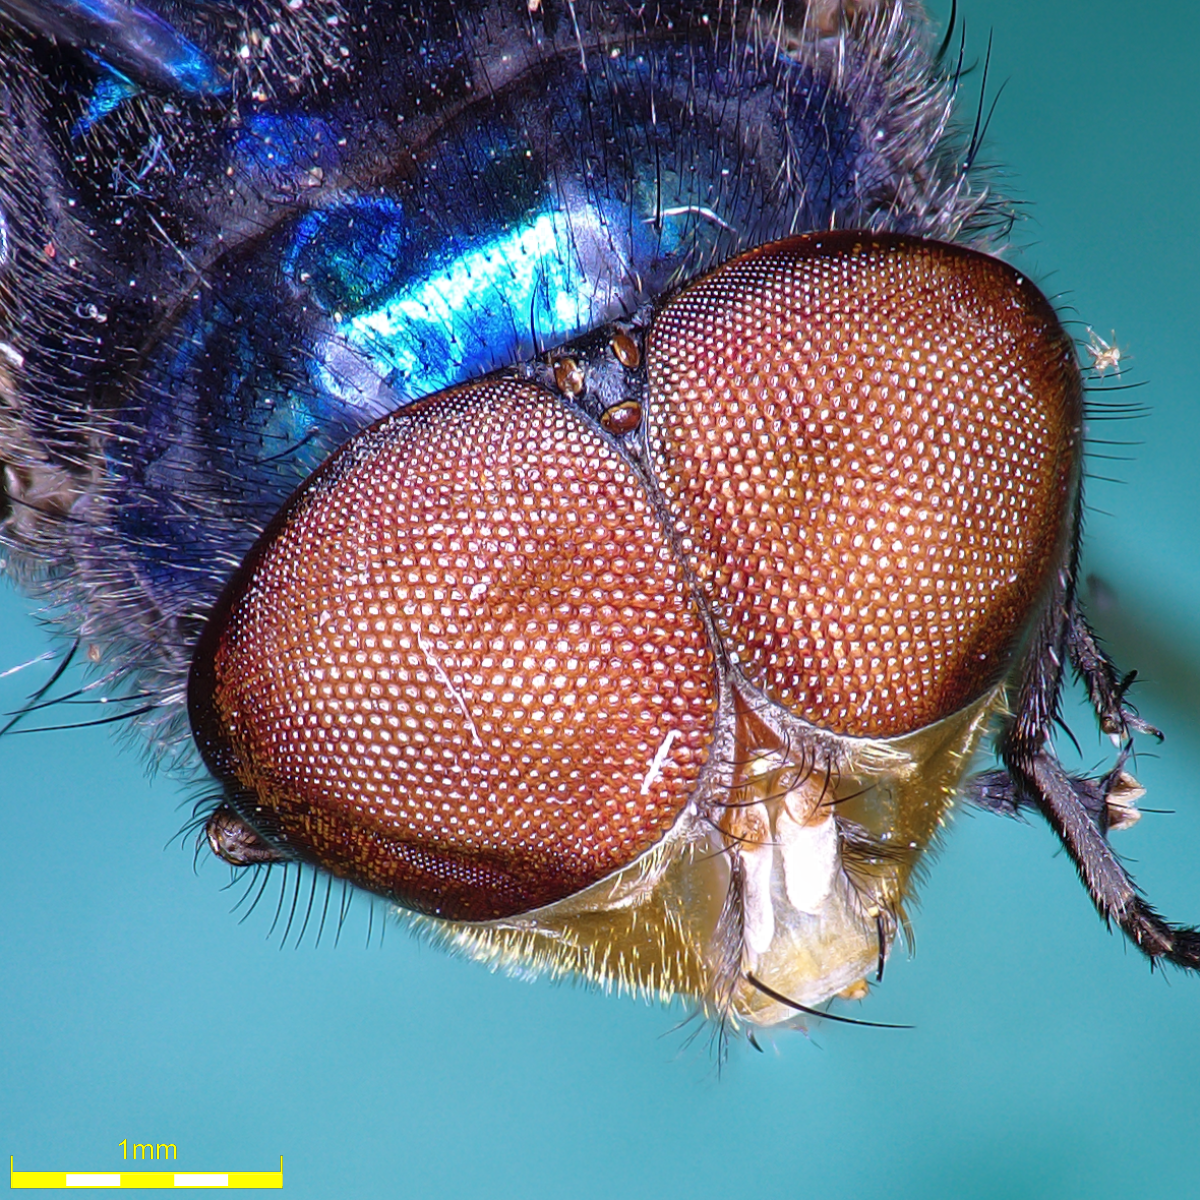 의용 곤충학을 위한 파리의 특성 측정